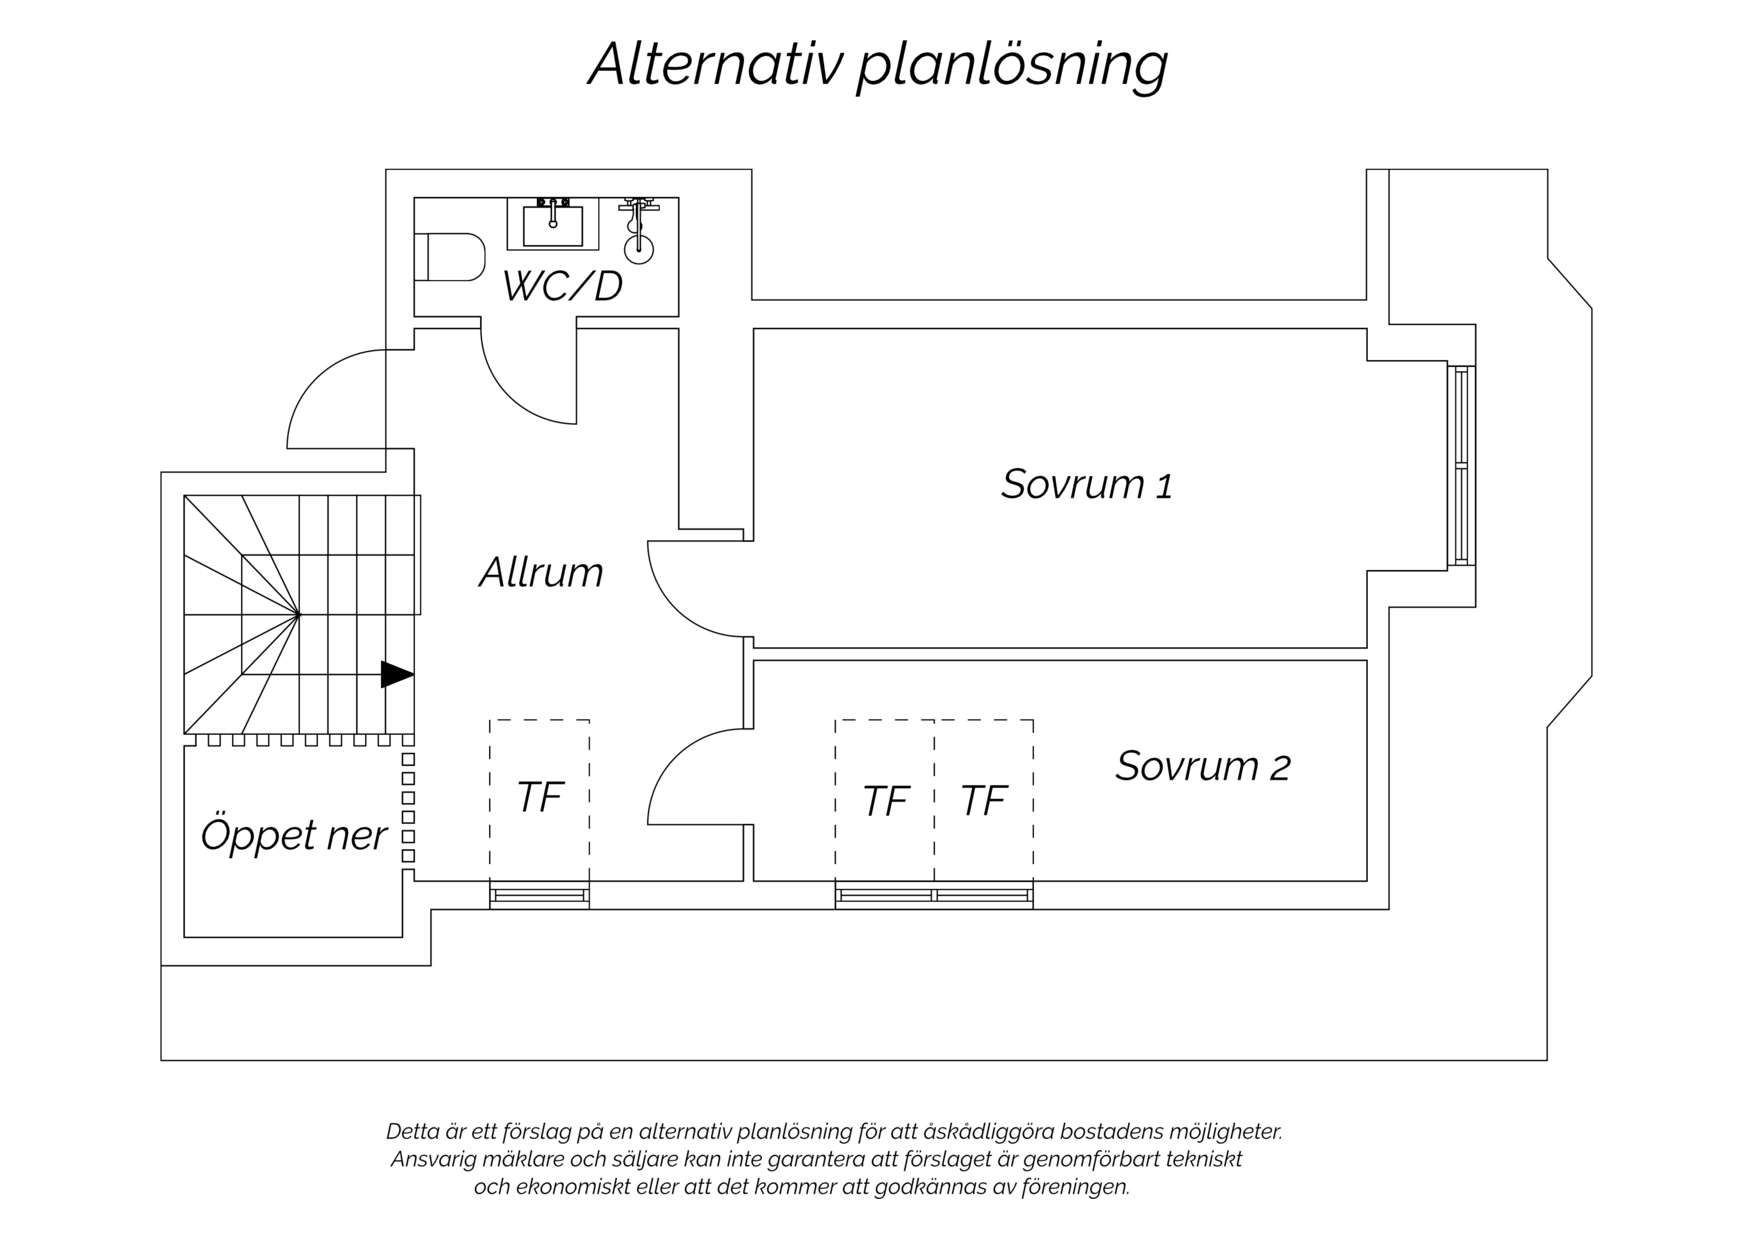 Alternativ planlösning (övreplan)